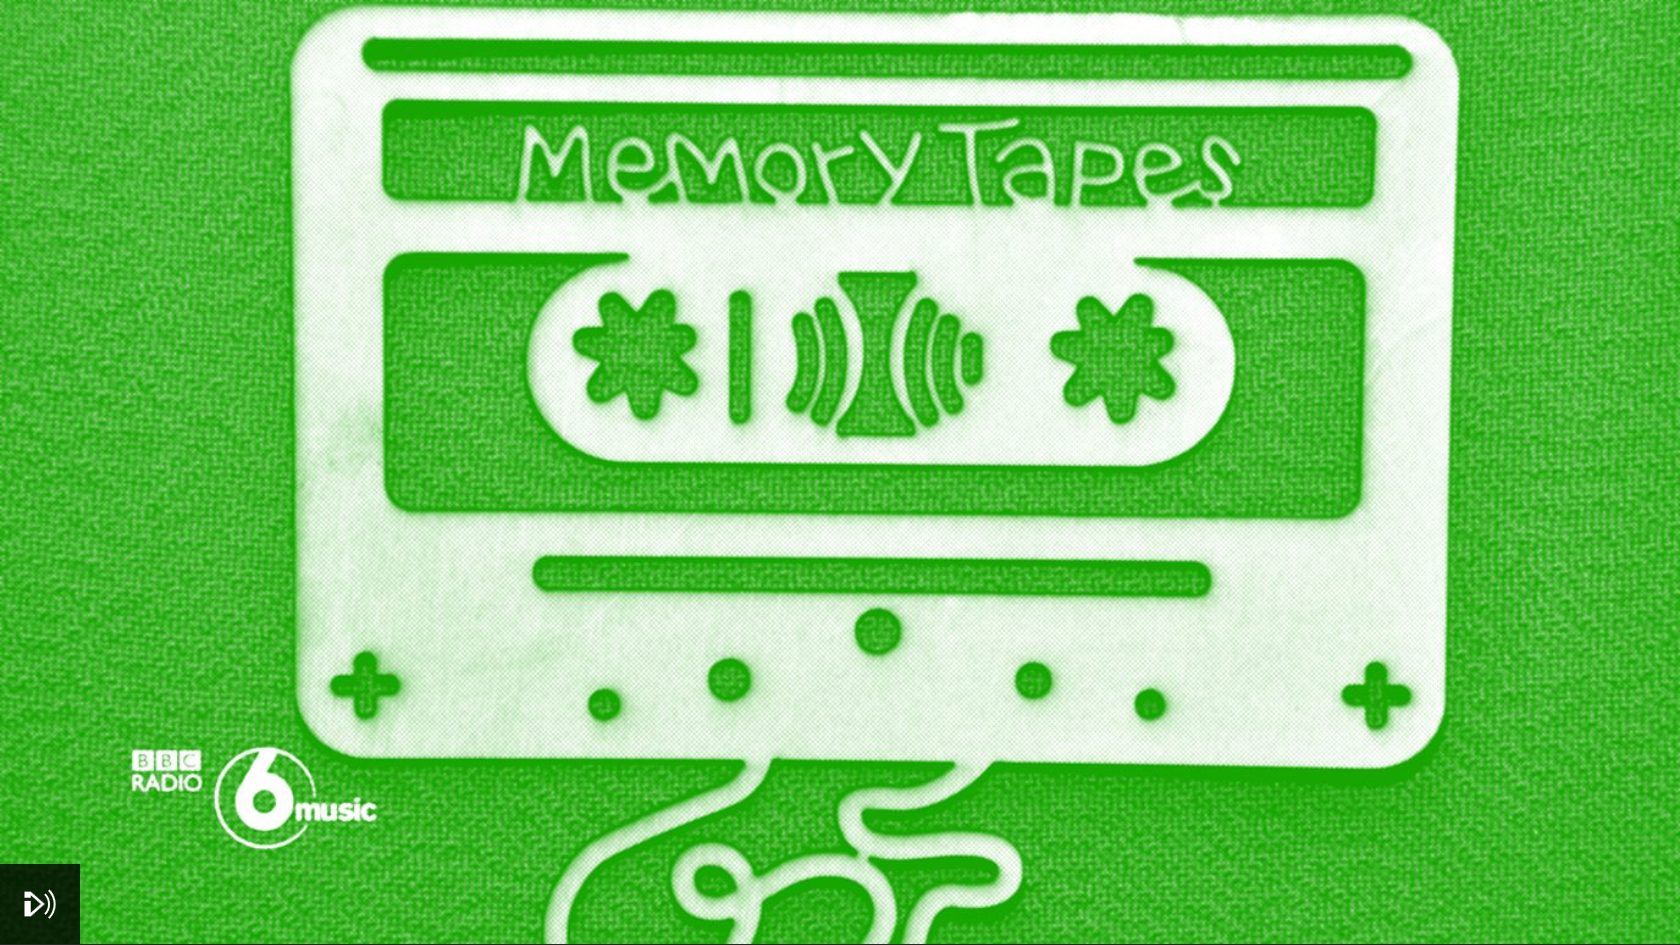 BBC Radio 6 Music Memory Tape